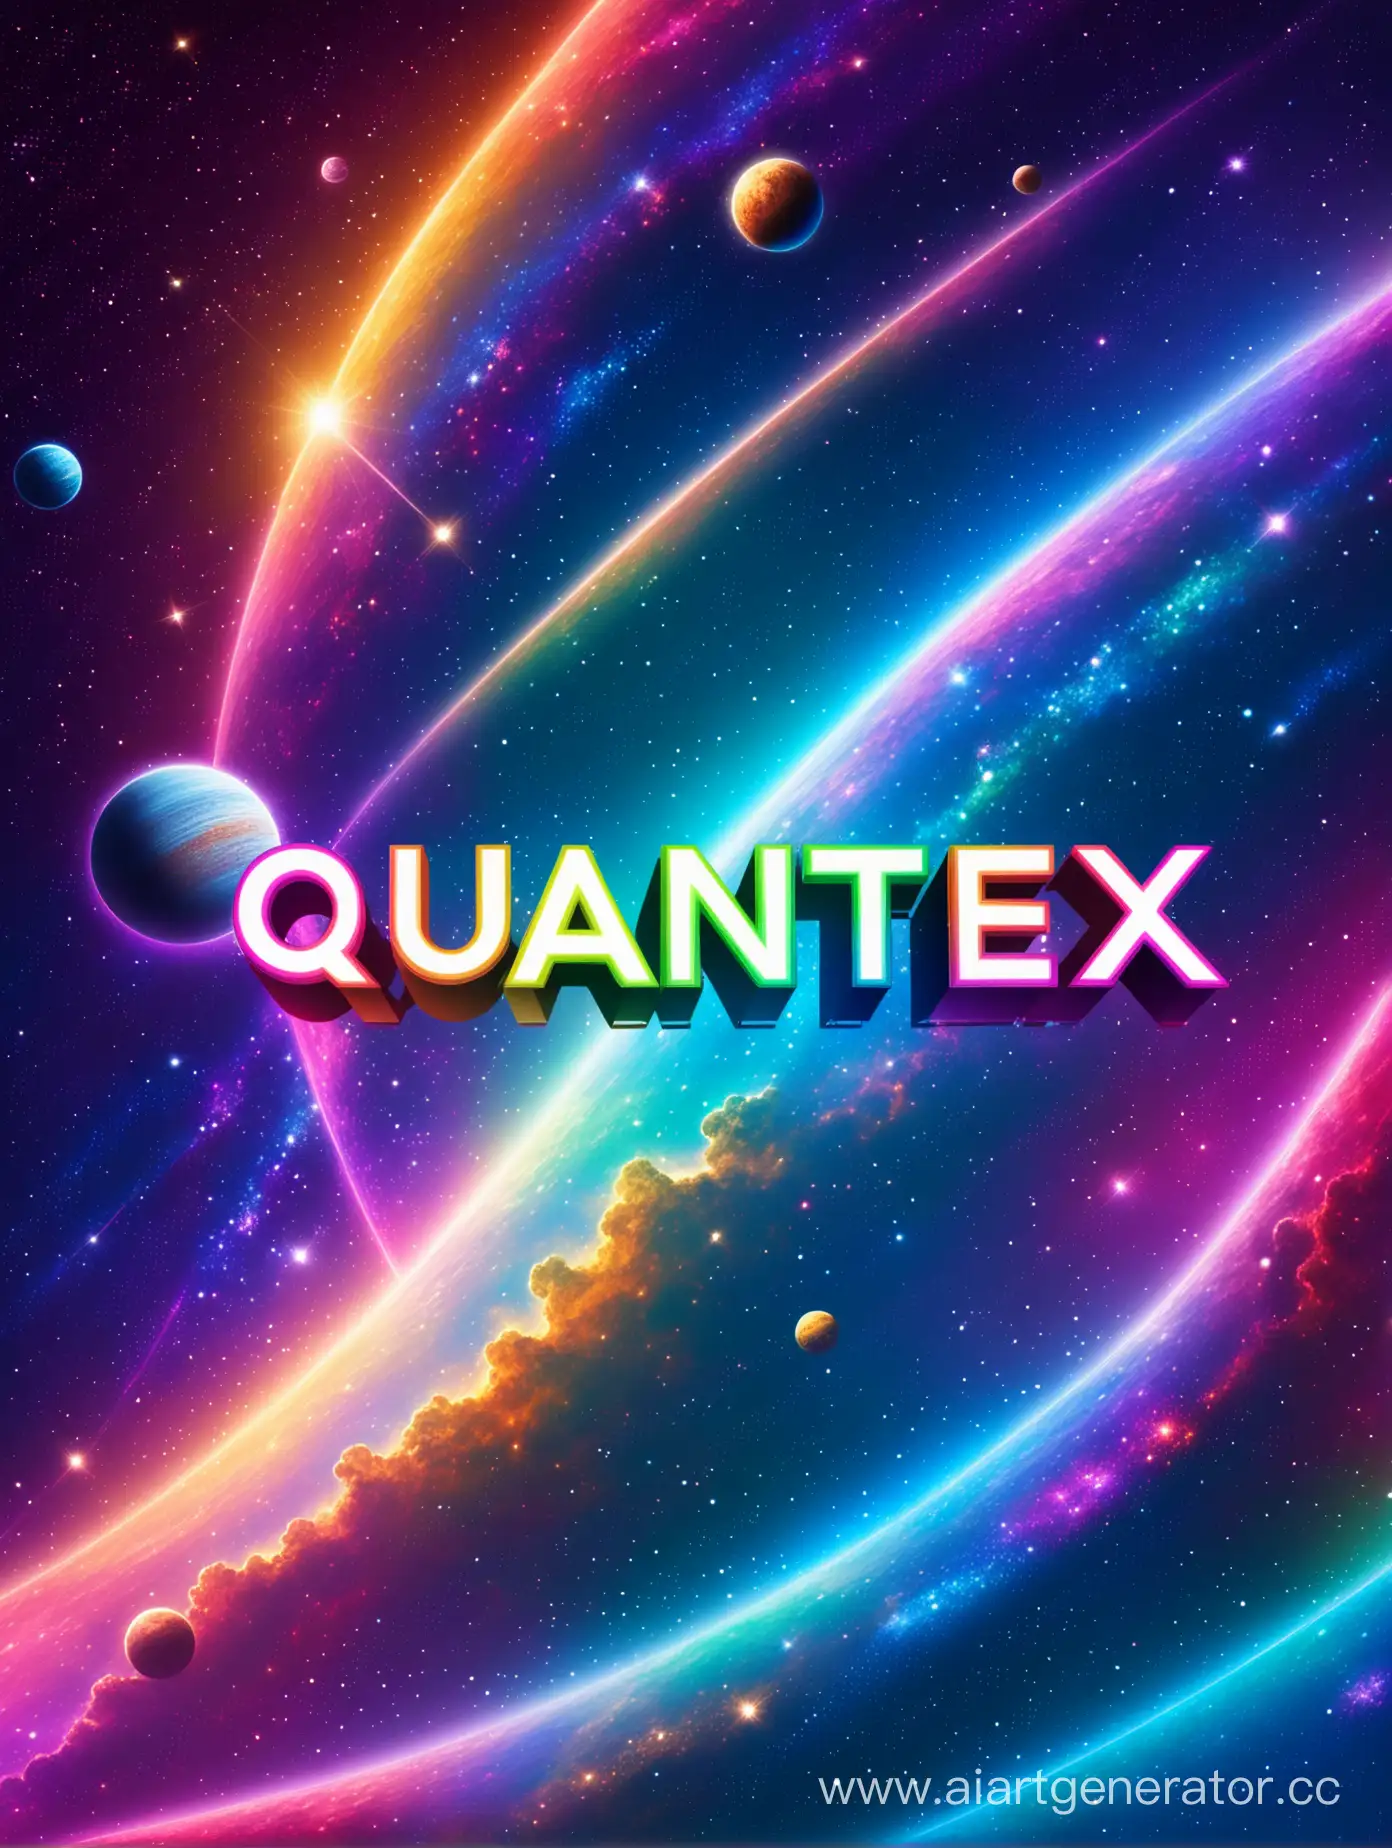 Красивое,красочное изображение космоса с надписью "QUANTEX" большими буквами главным планом